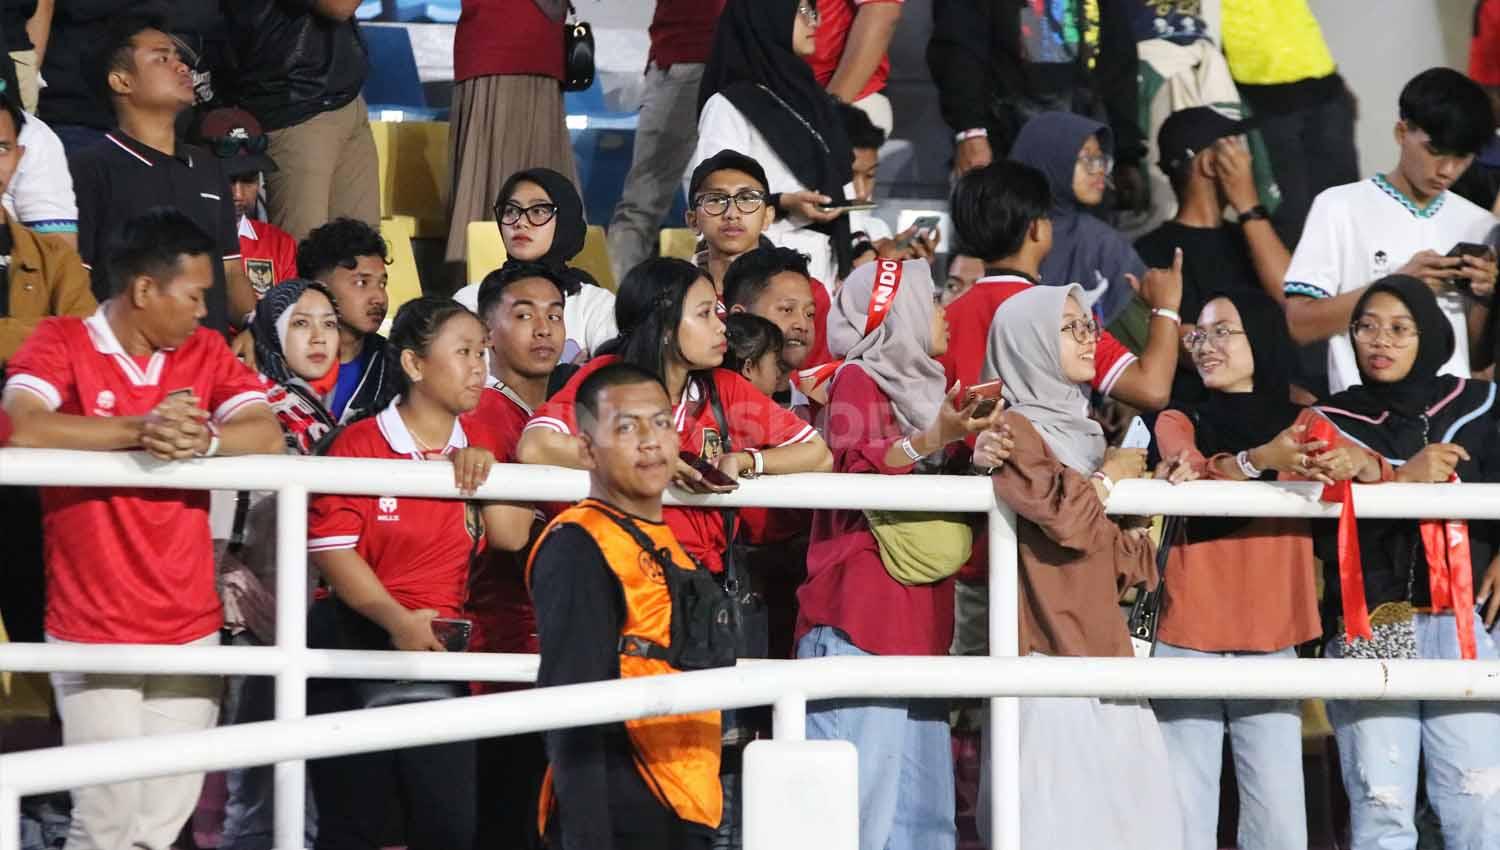 Dominasi para penonton wanita di Stadion Manahan Solo, utamanya tribun barat dan timur. Ketika dia tribun itu ikut bernyanyi, suara kaum hawa terdengar lebih dominan. (Foto: Nofik Lukman Hakim/INDOSPORT)